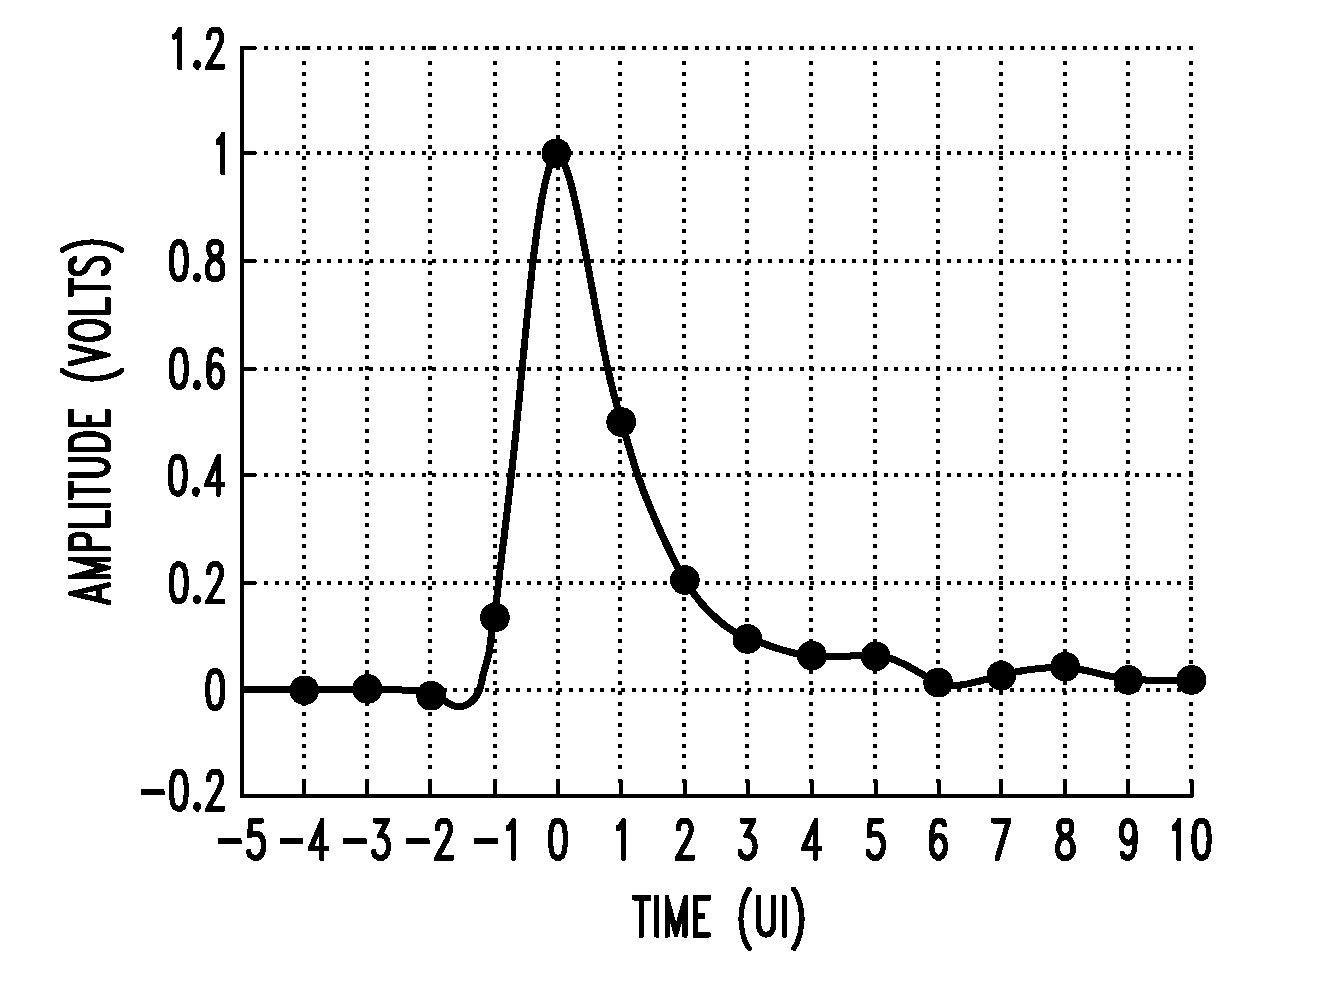 Adjusting sampling phase in a baud-rate CDR using timing skew